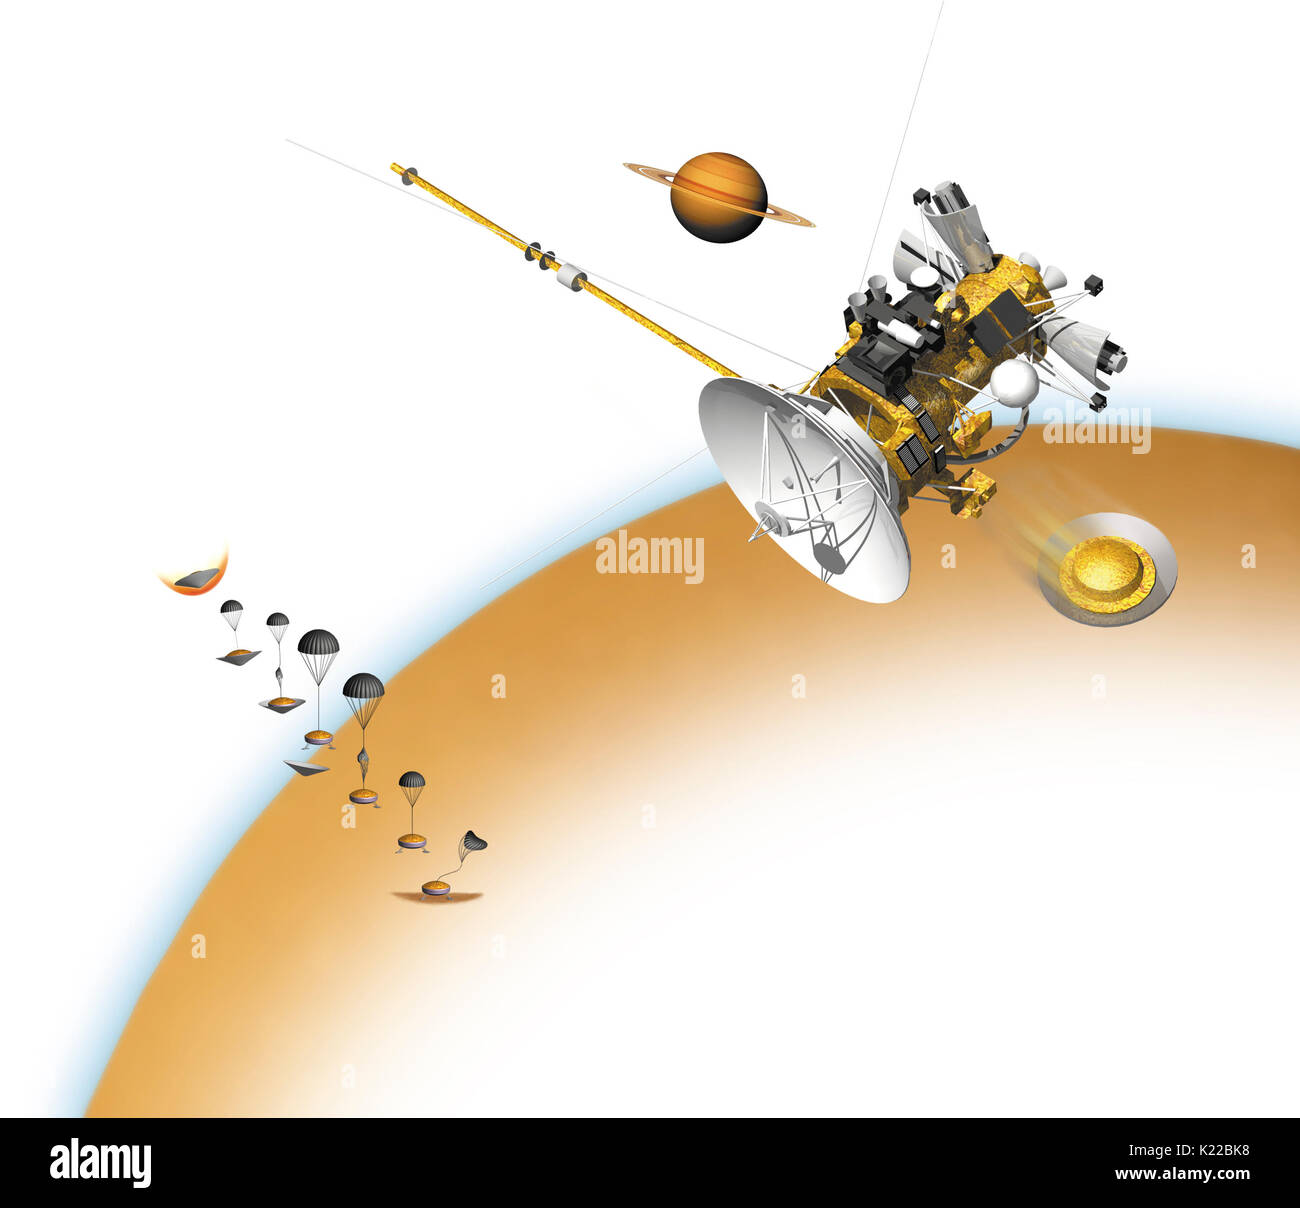 Dicembre 2004, la sonda Huygens è entrato in Titan atmosfera e ha distribuito il suo paracadute pilota. A circa 175 km di altitudine, la sonda ha aperto il suo paracadute principale, ha caduto la sua carenatura e ha iniziato ad utilizzare i suoi strumenti scientifici. Huygens ha poi lasciato cadere il suo paracadute principale e ha distribuito un paracadute di stabilizzazione. Per l'ultimo 140 km, che ha trasmesso i dati all'orbiter prima dello sbarco. Foto Stock